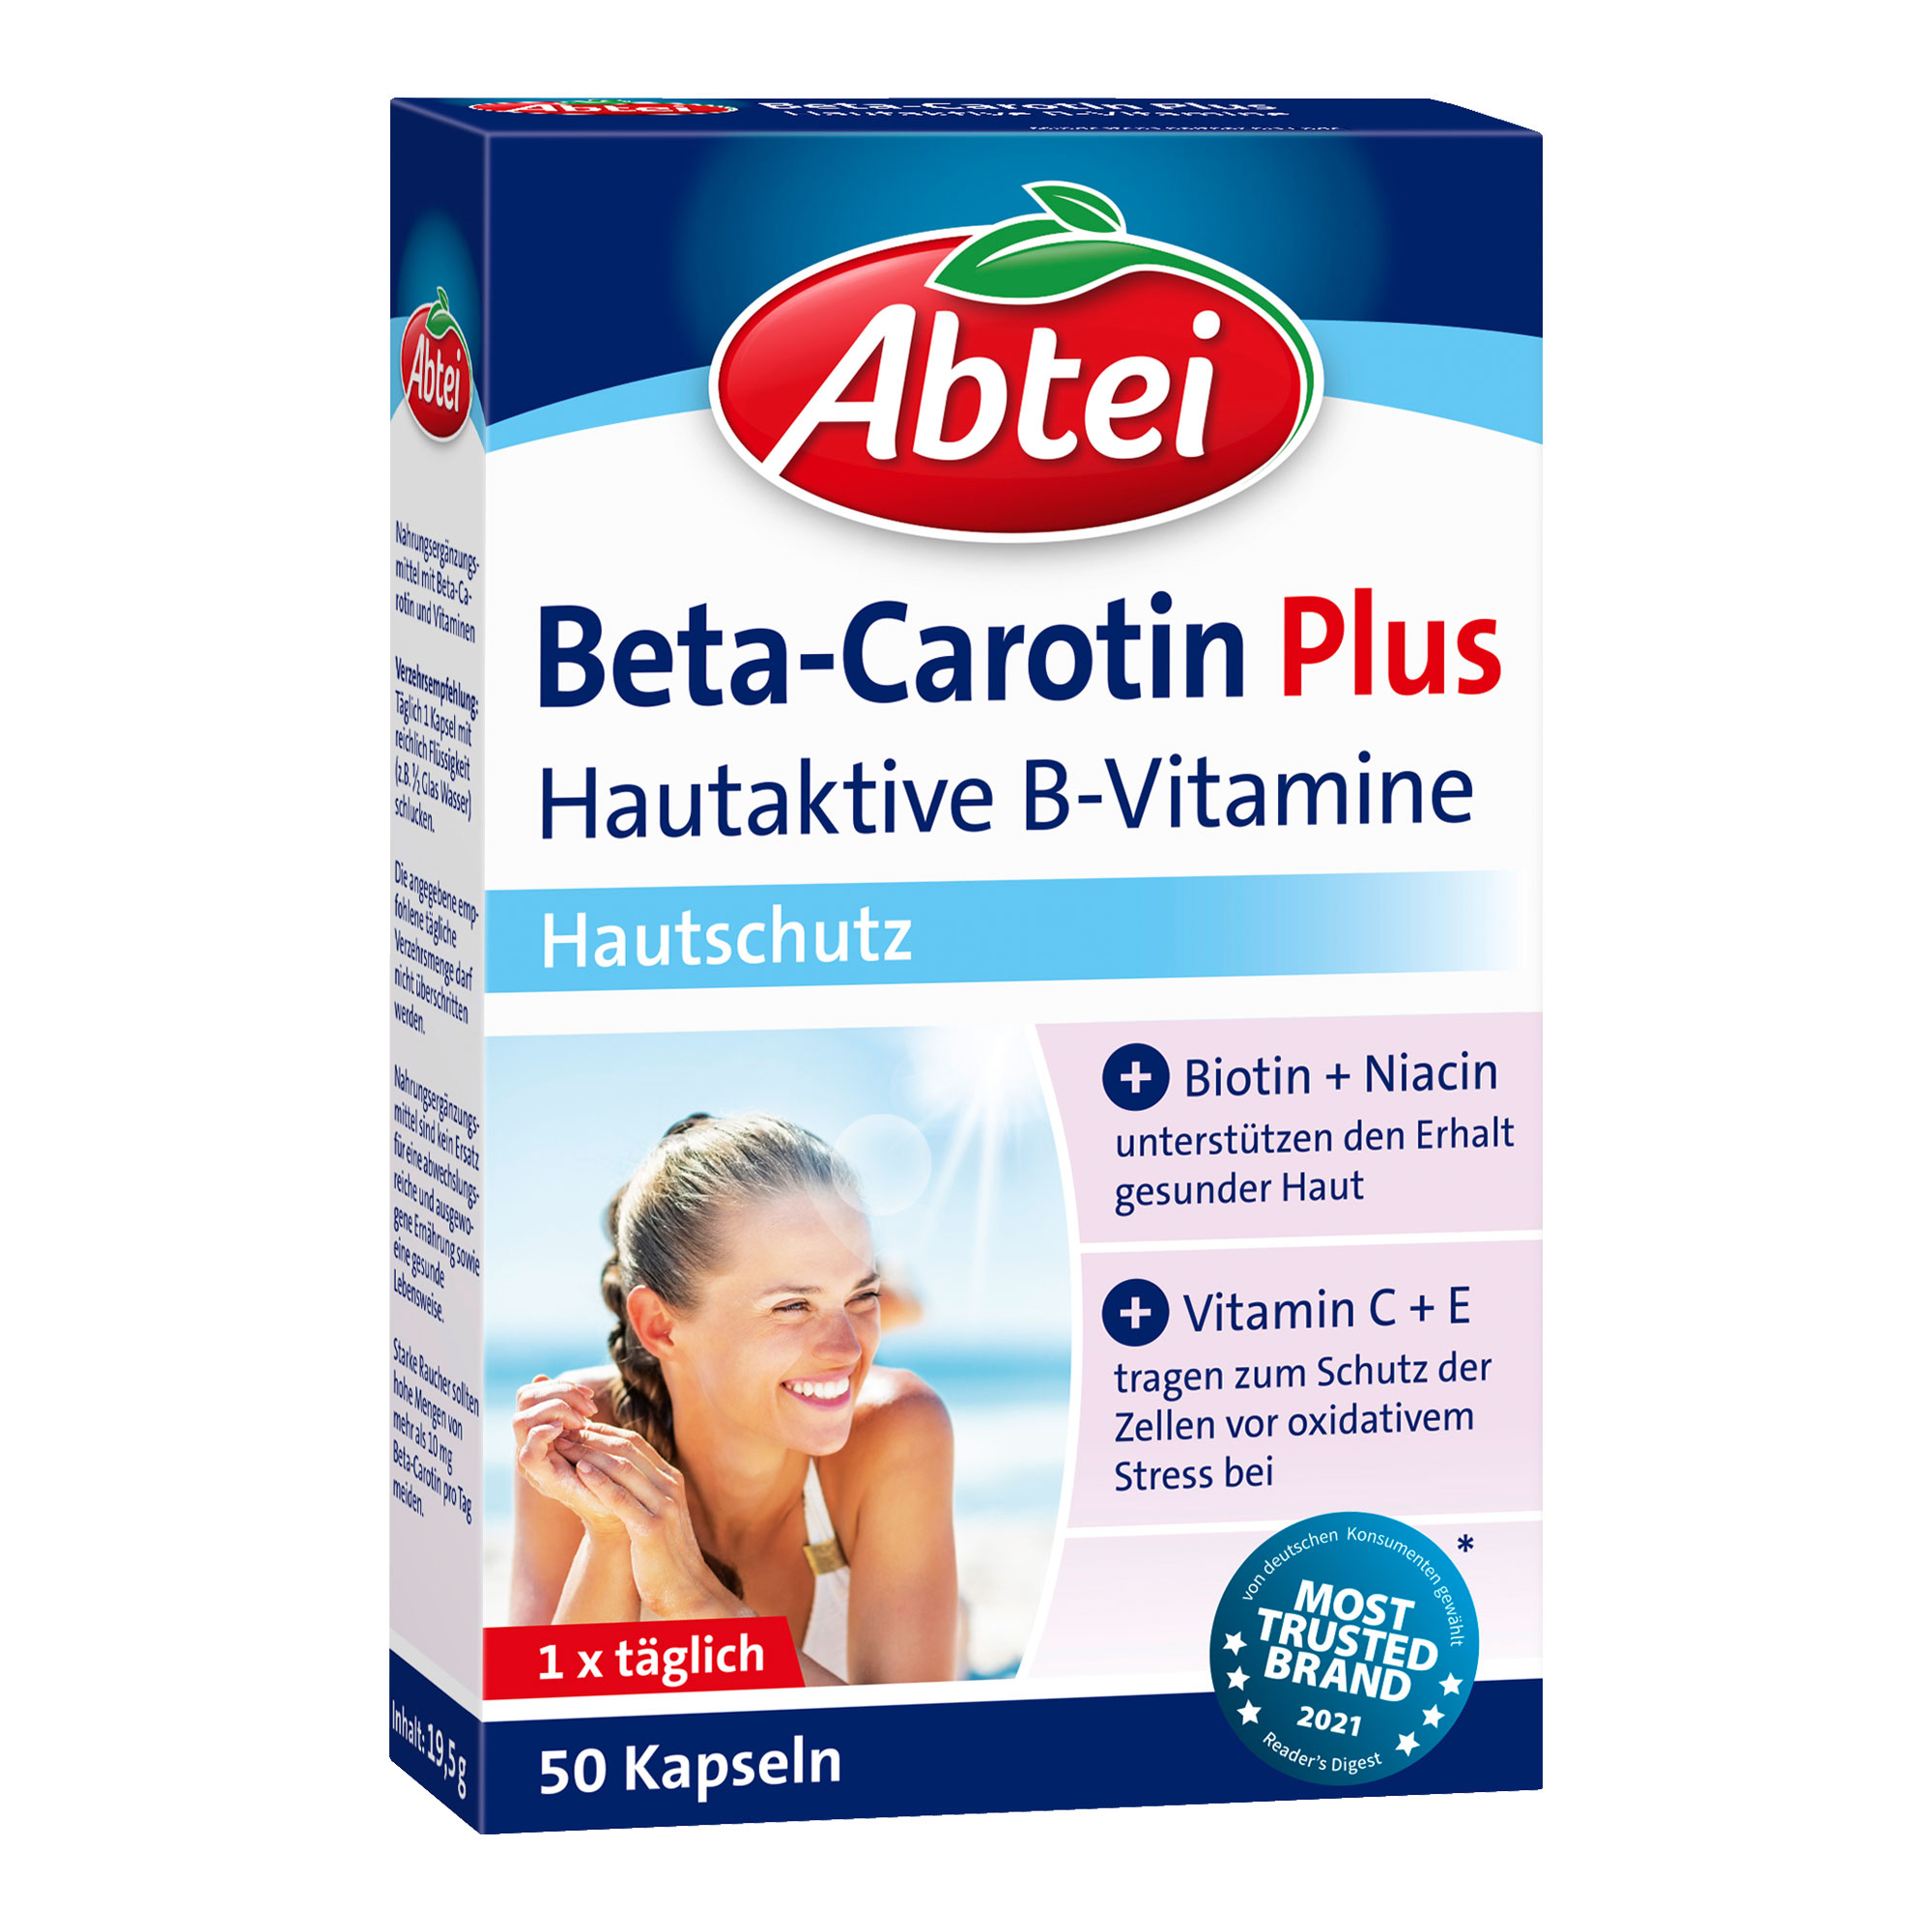 Nahrungsergänzungsmittel mit Beta-Carotin und Vitaminen.